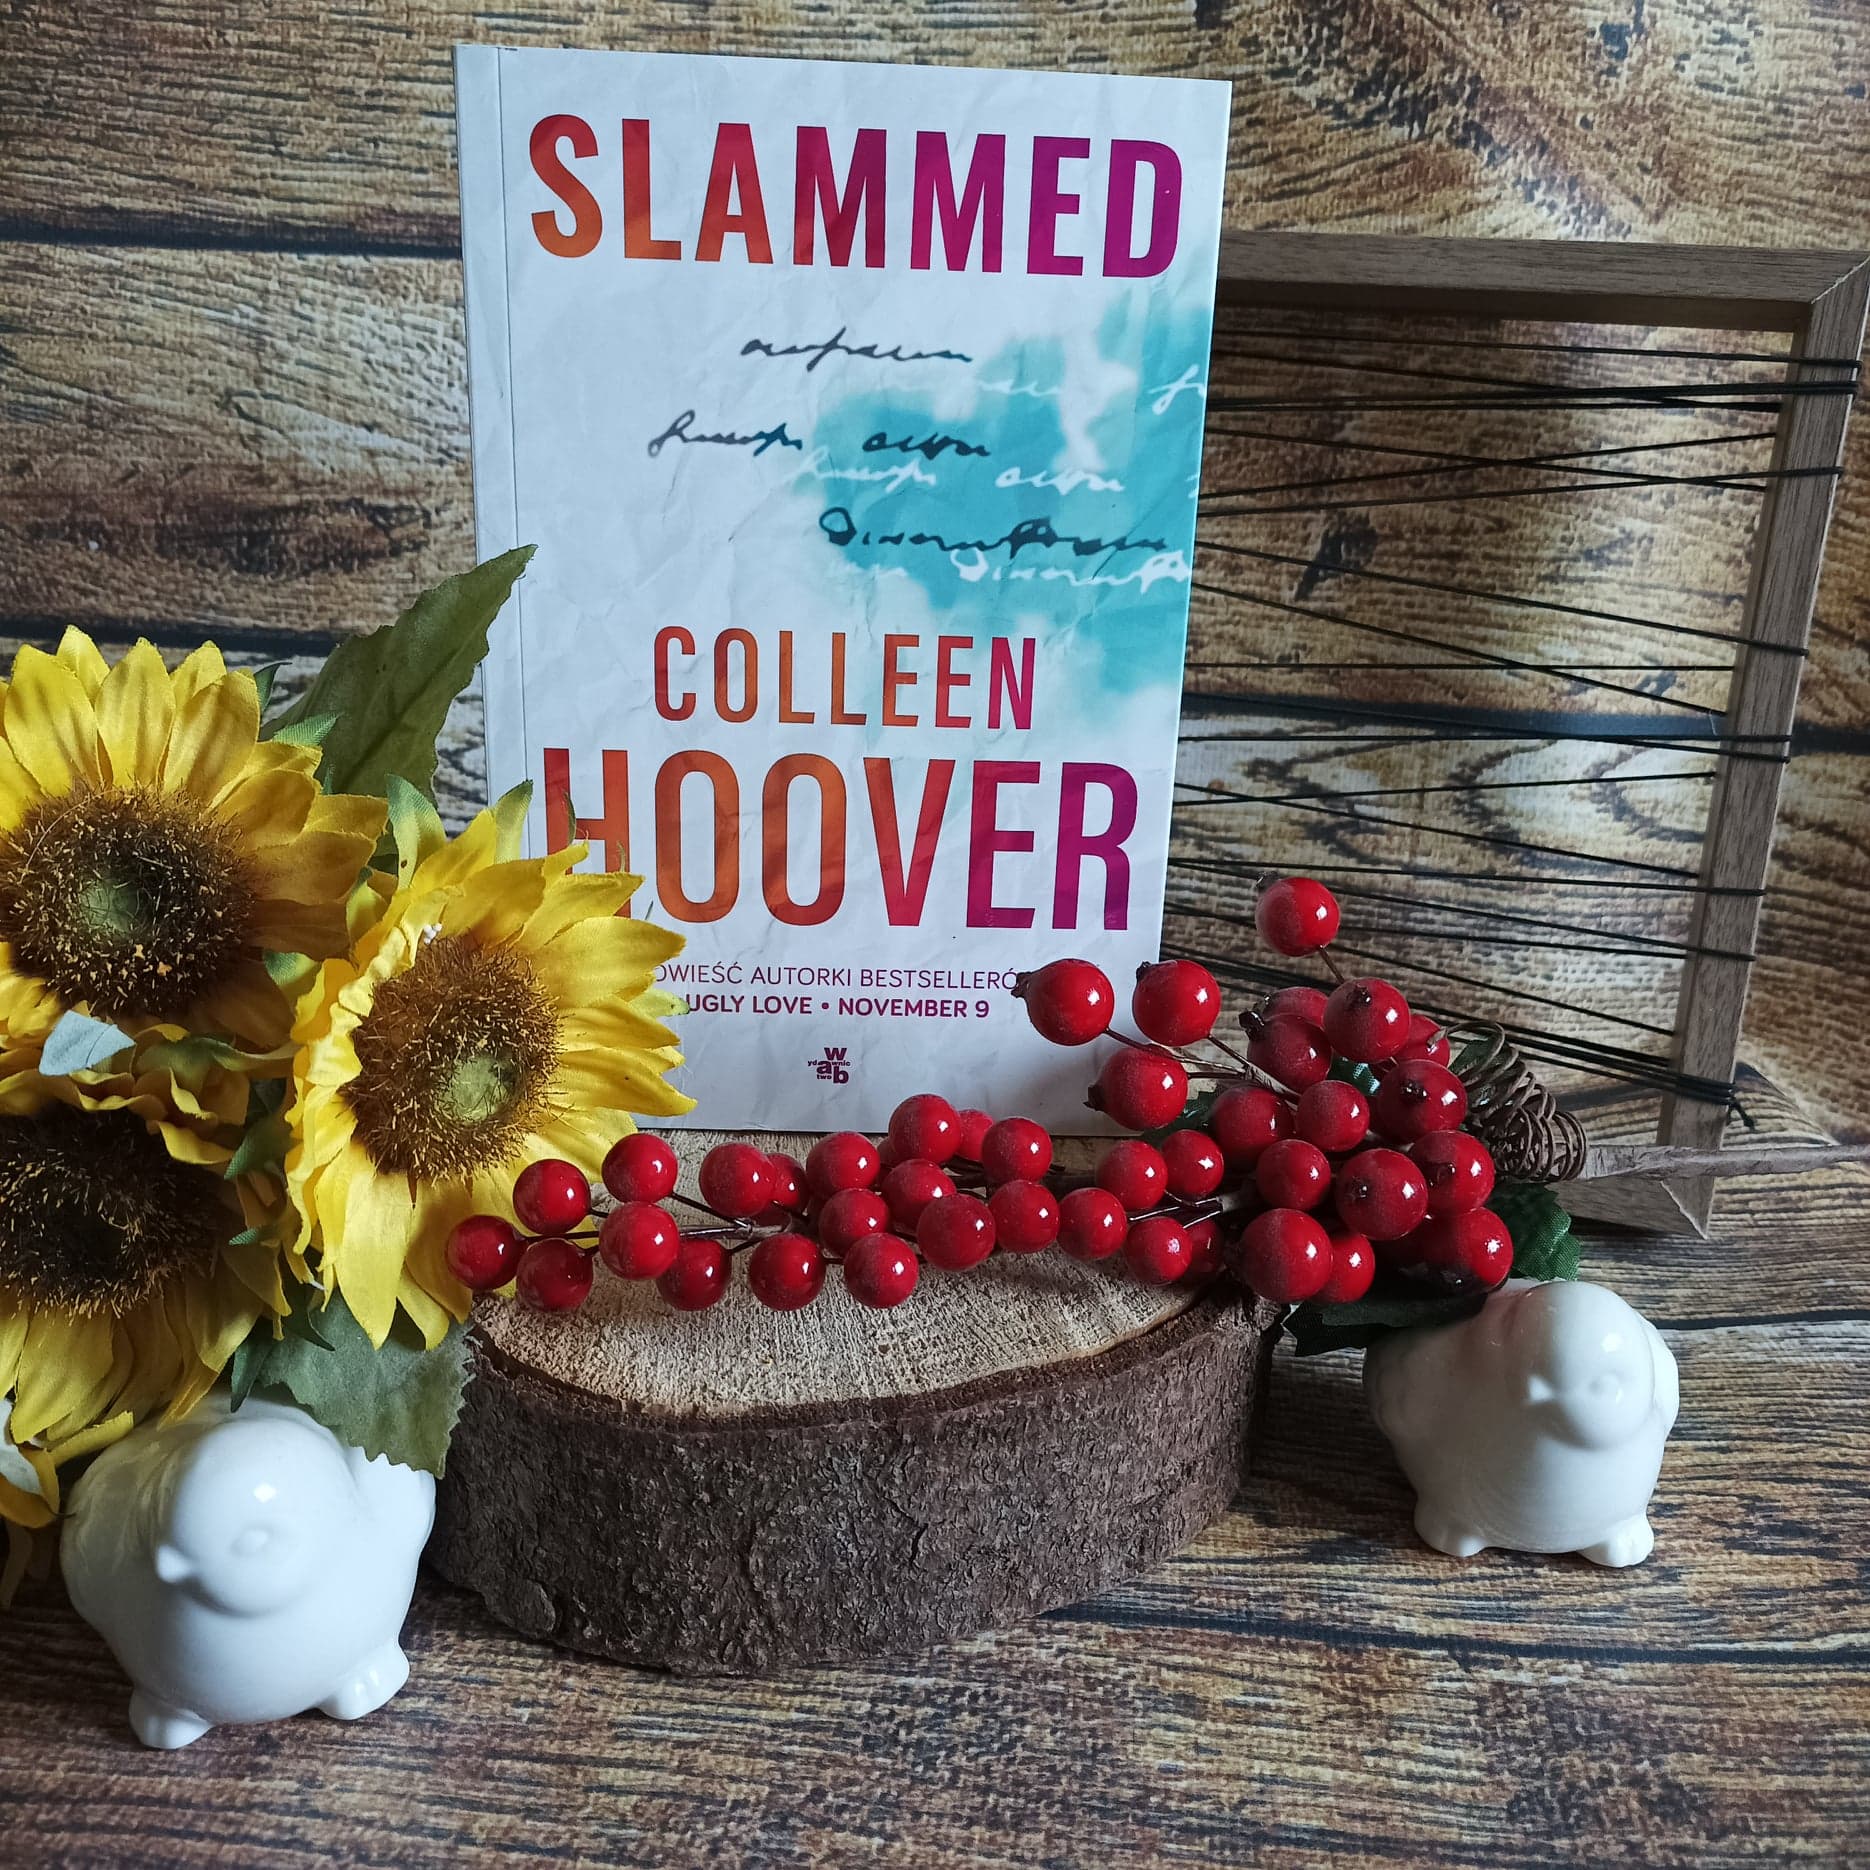 Slammed Colleen Hoover